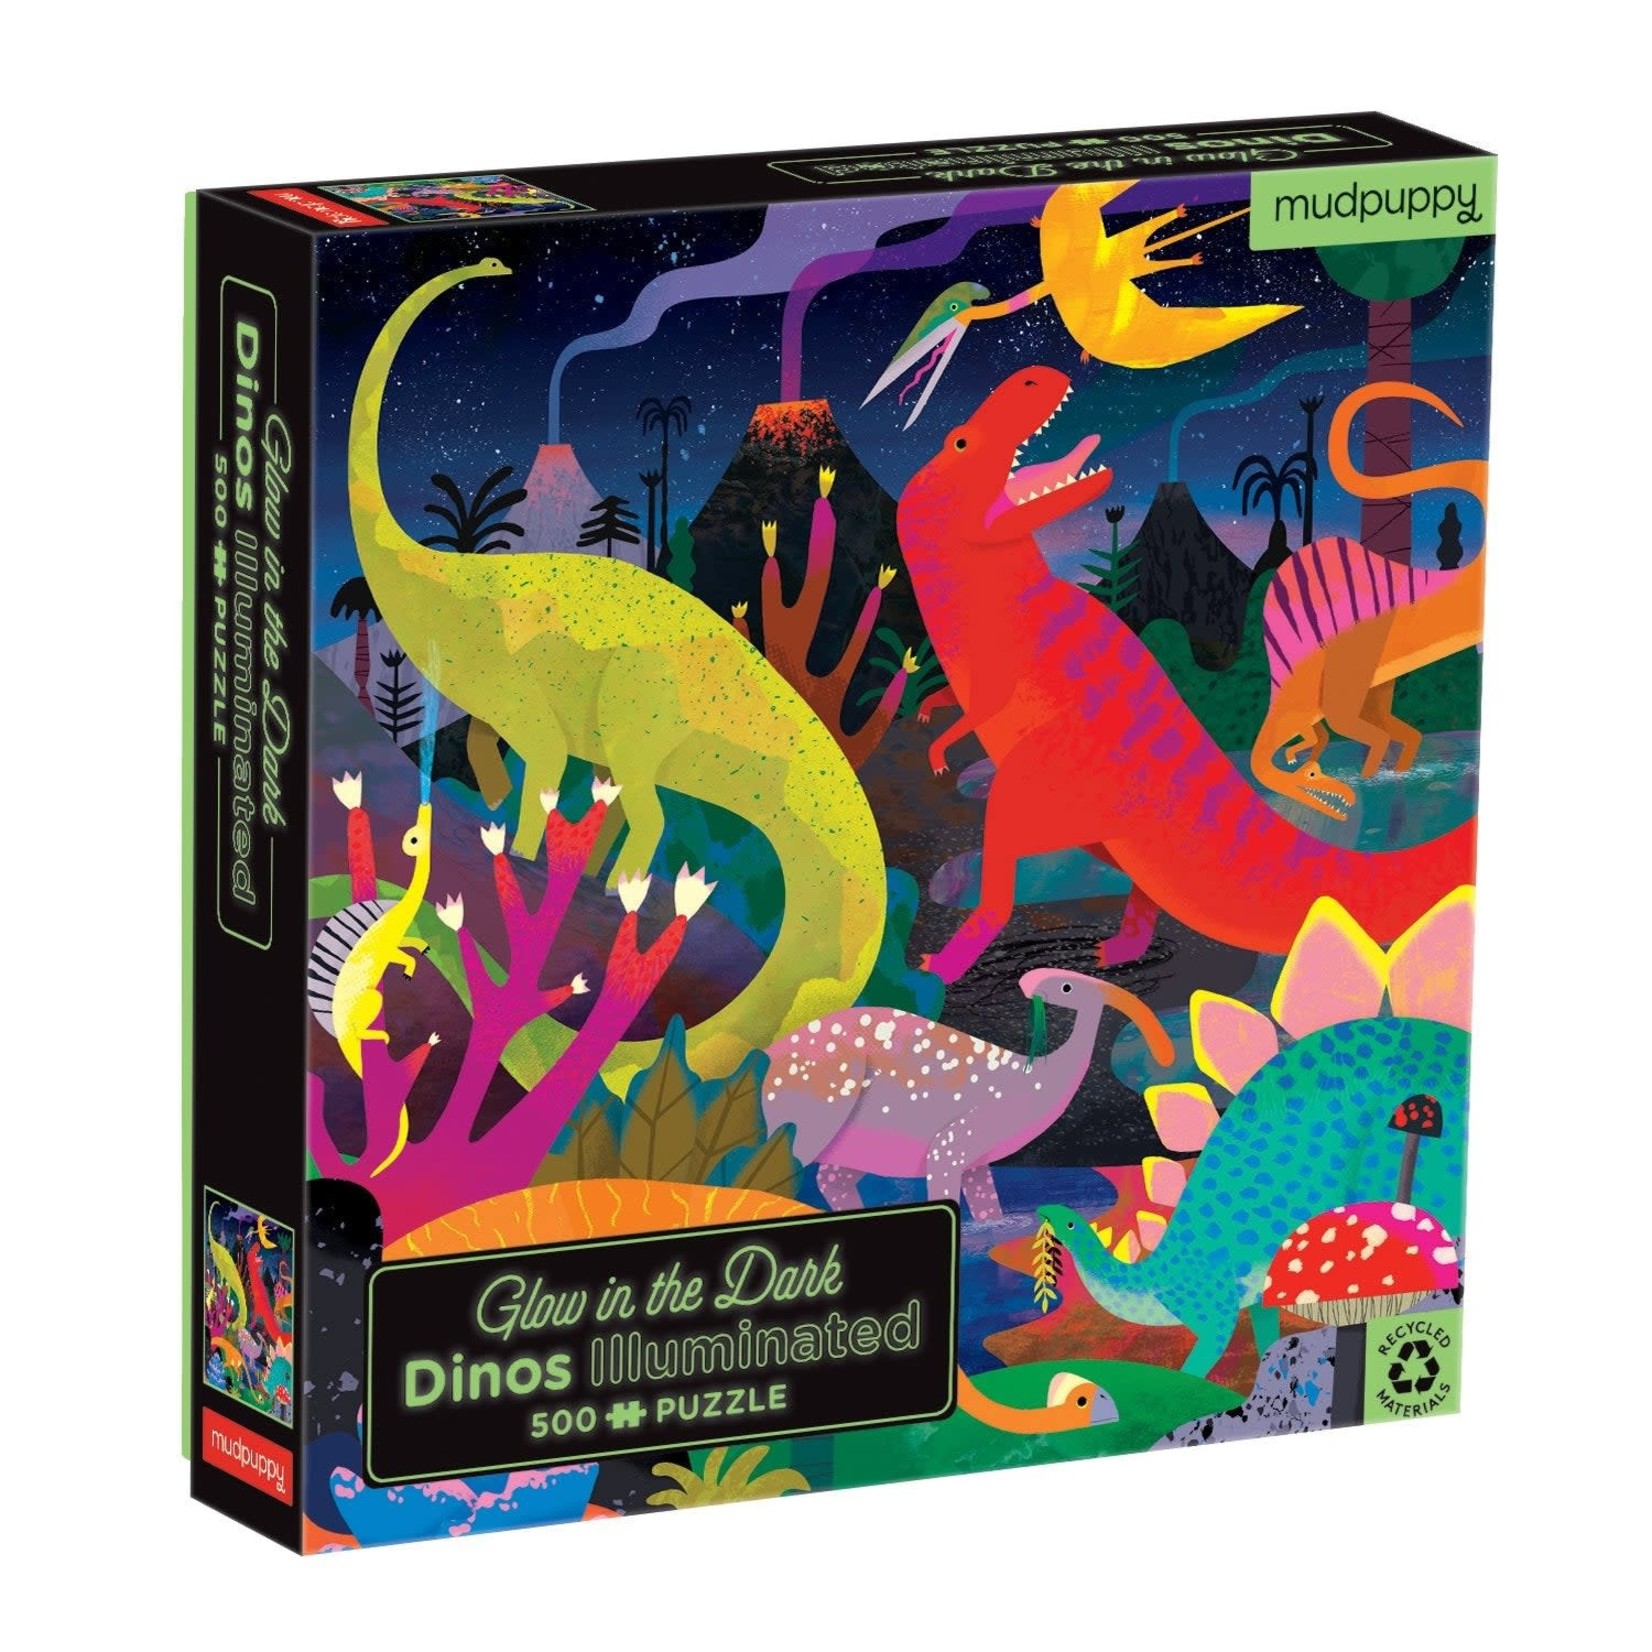 Mudpuppy Glow in the Dark Puzzle - Dinos Illuminated 500 Piece